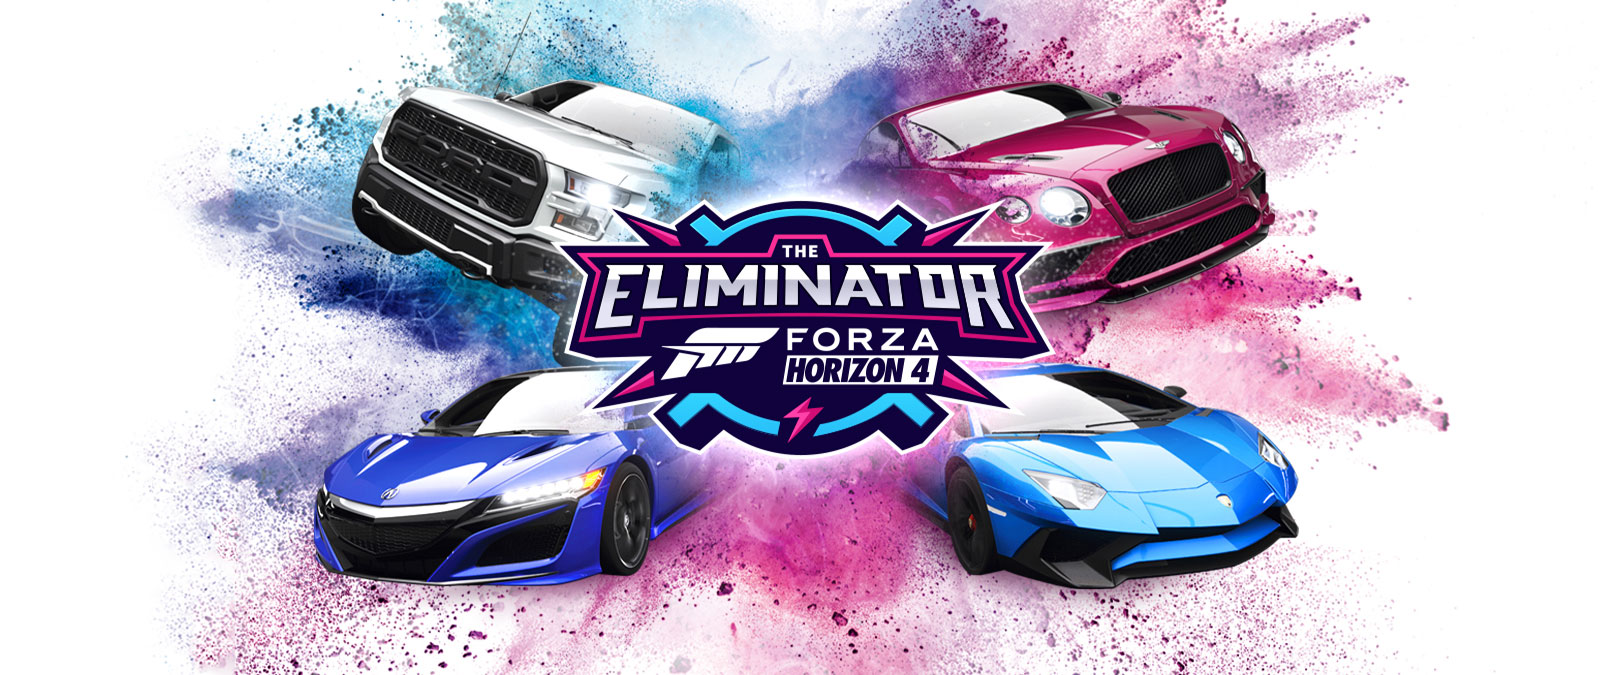 The Eliminator, o logotipo Forza Horizon 4 logo, quatro carros com pó azul e rosa em volta deles